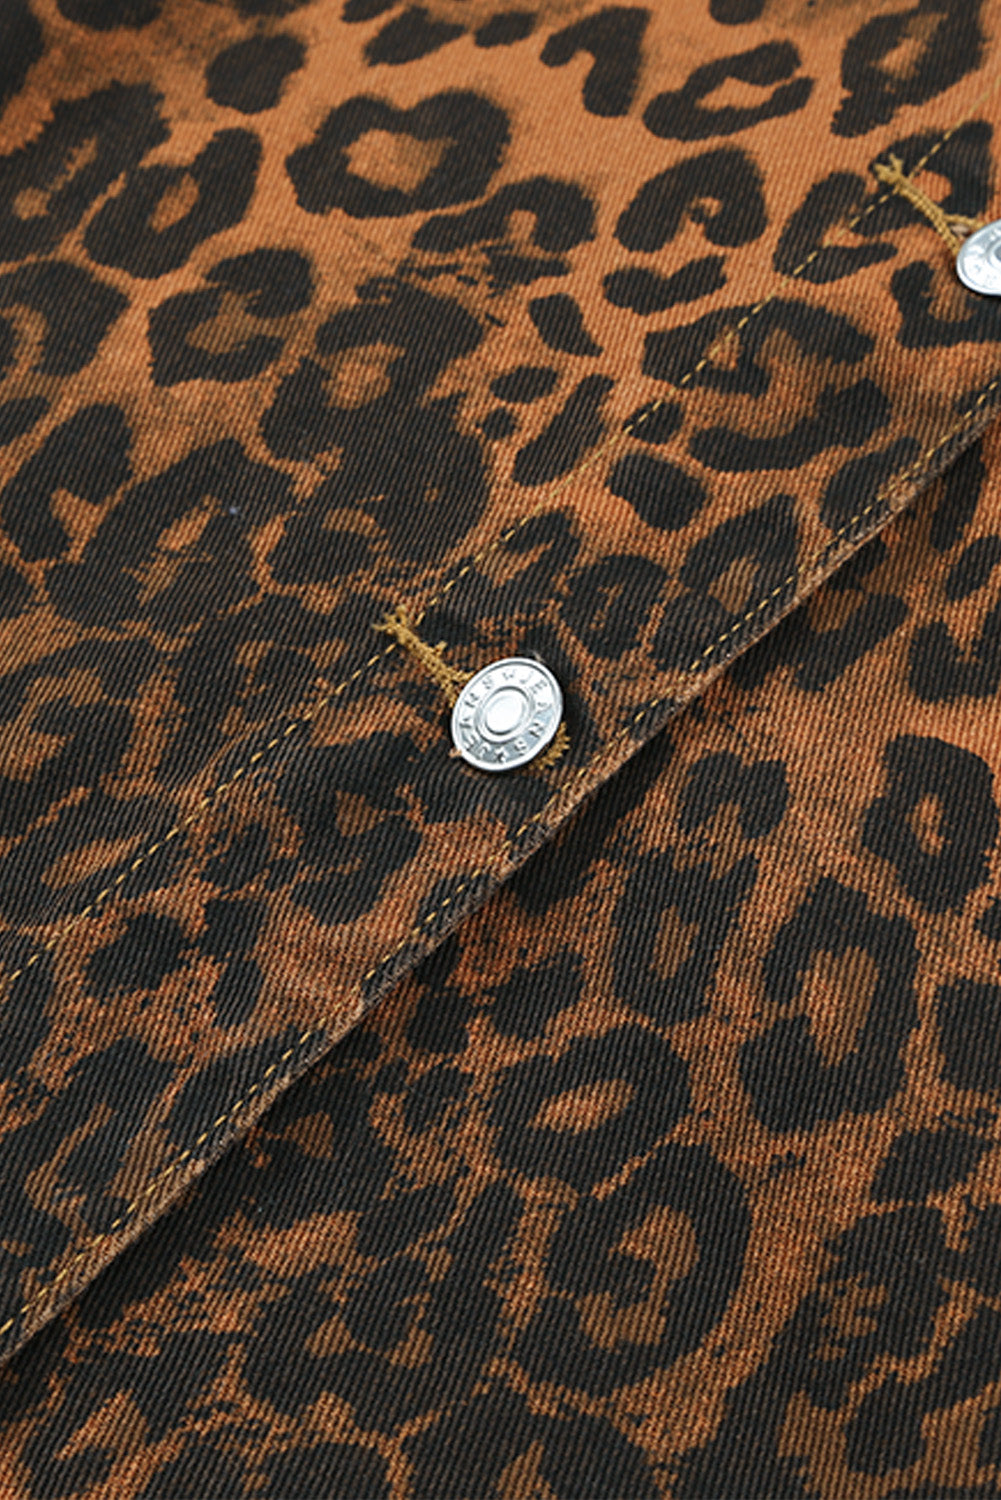 Leopard Leopard Ripped Hooded Denim Jacket